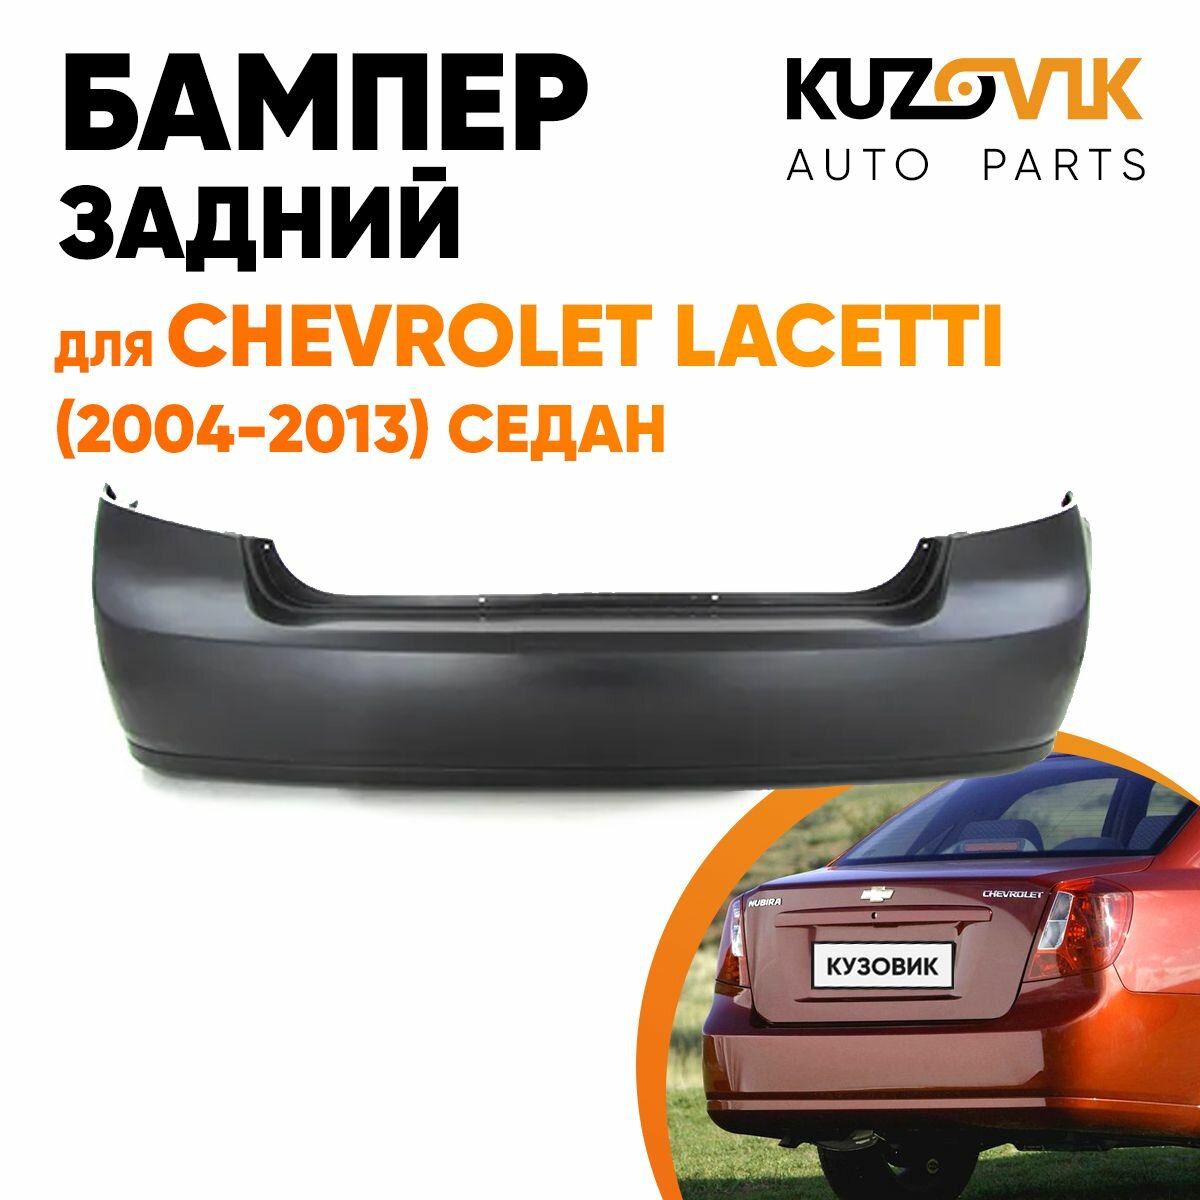 Бампер задний Chevrolet Lacetti (2004-2013) седан